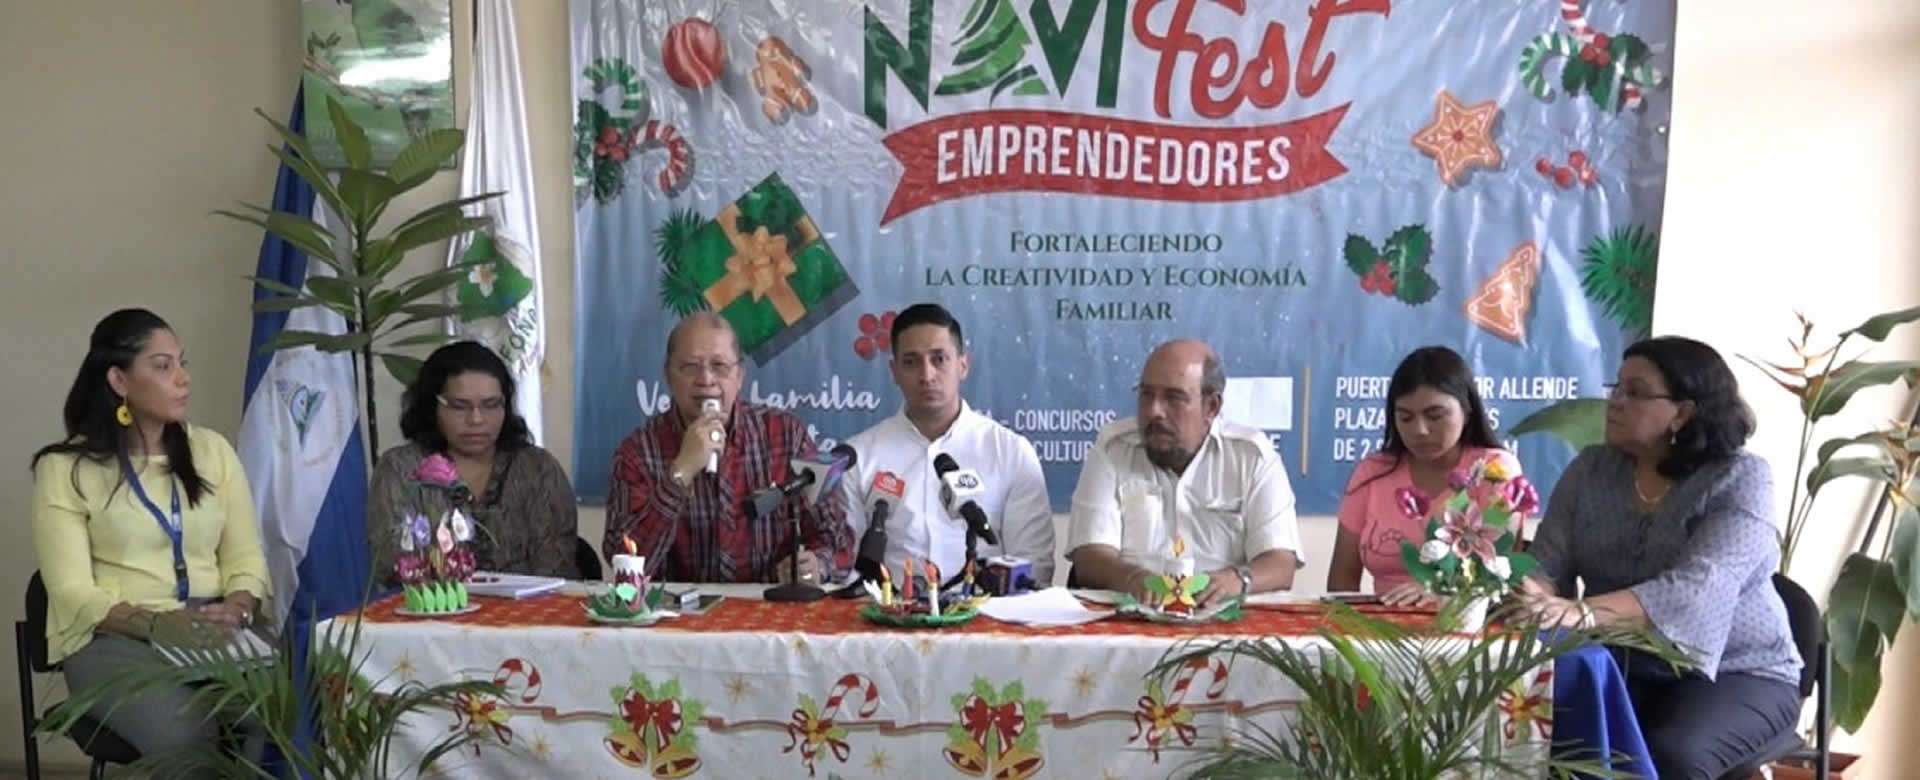 Más de 100 artesanos estarán en Feria Navifest en el Puerto Salvador Allende